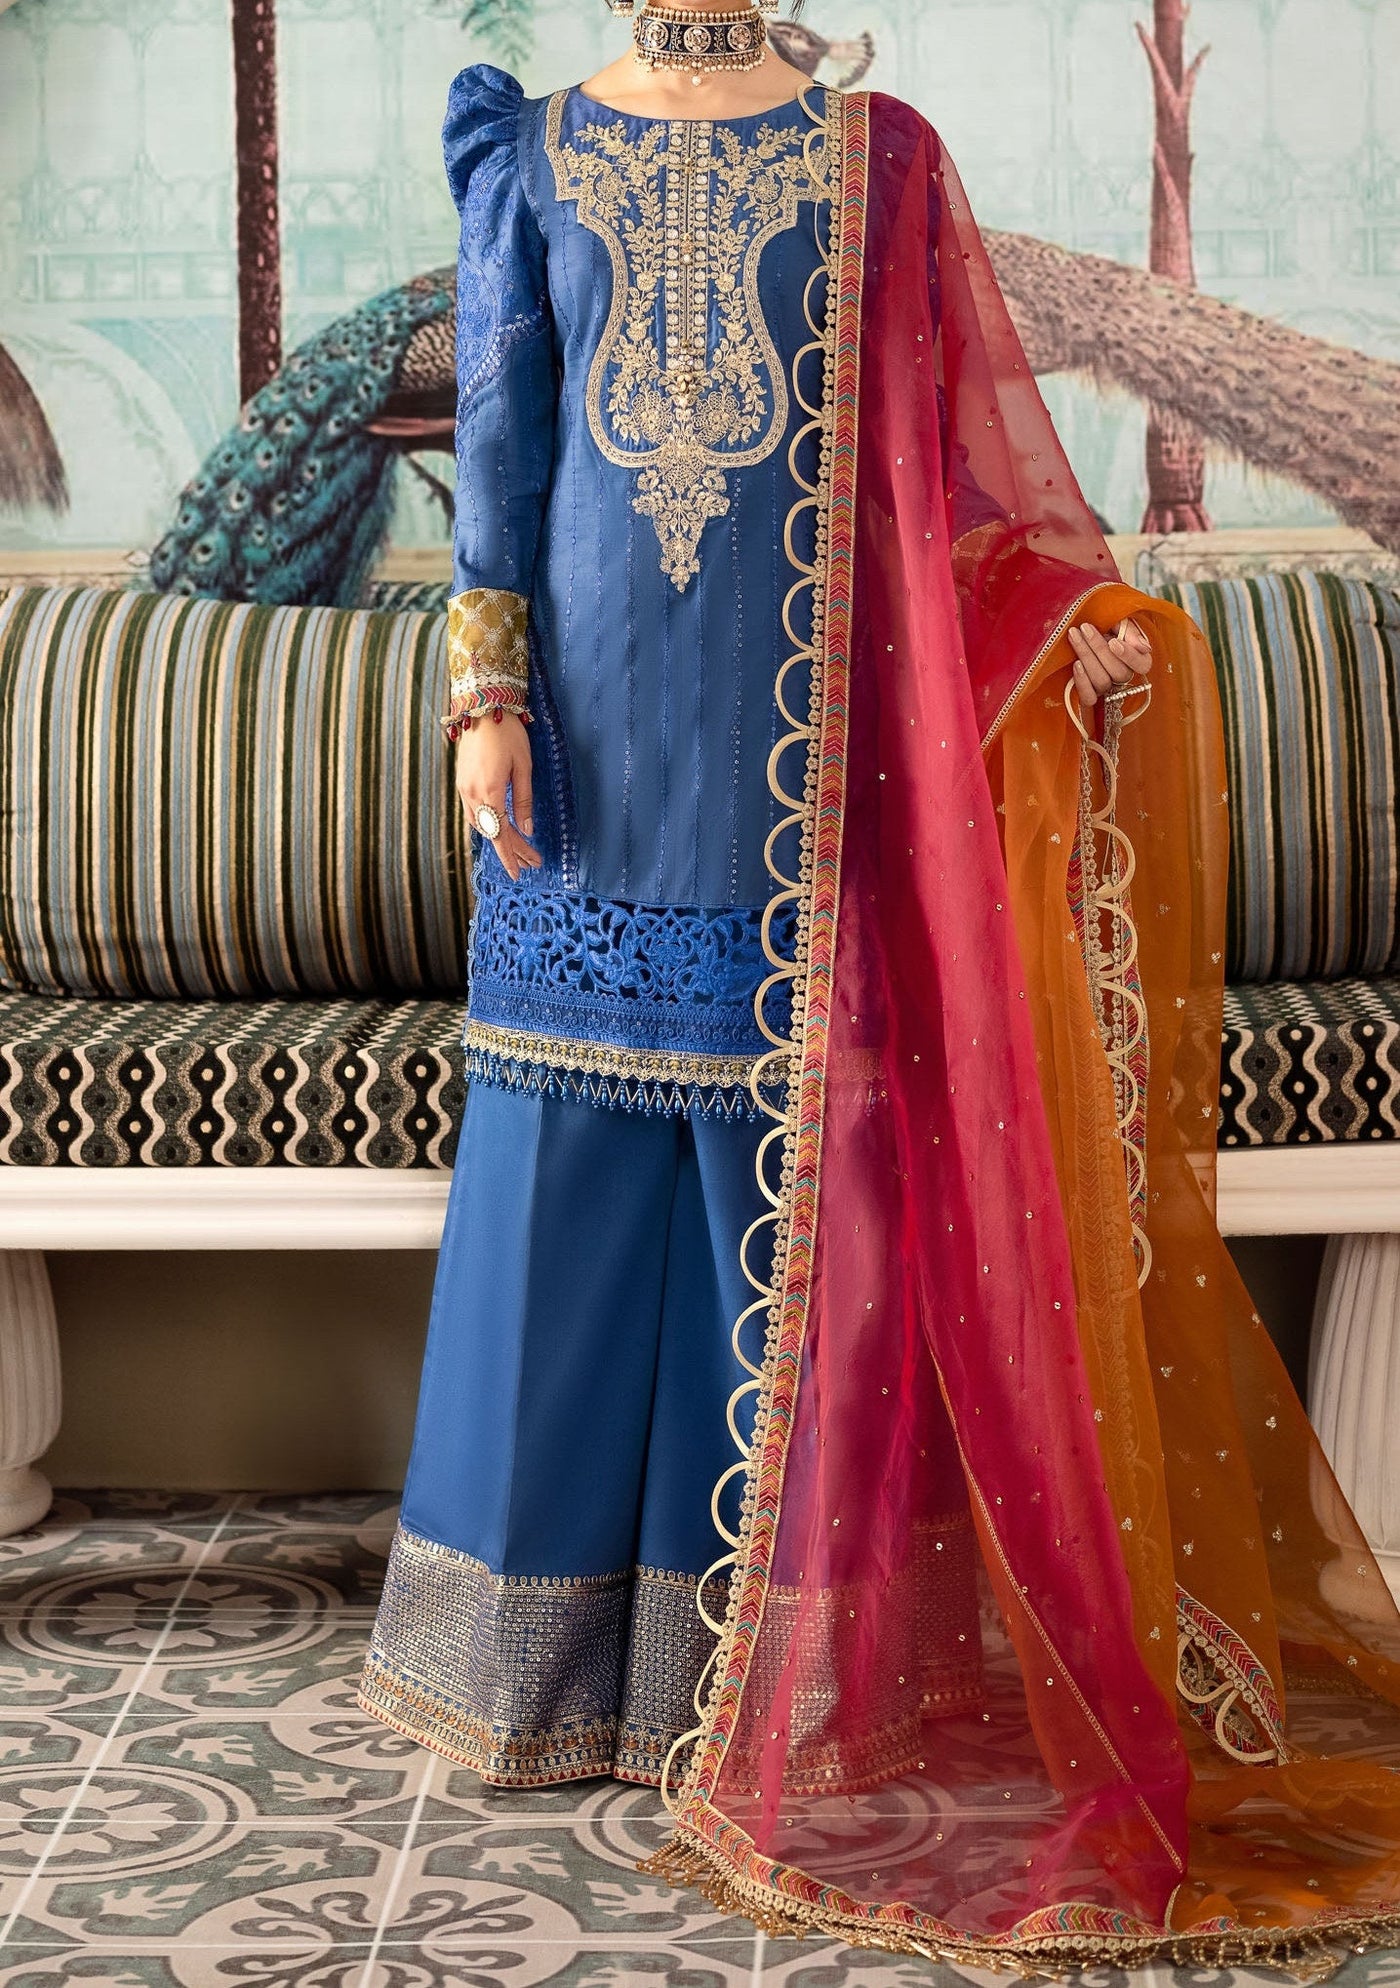 Maria.B Sateen Pakistani Luxury Satin Dress - db24088